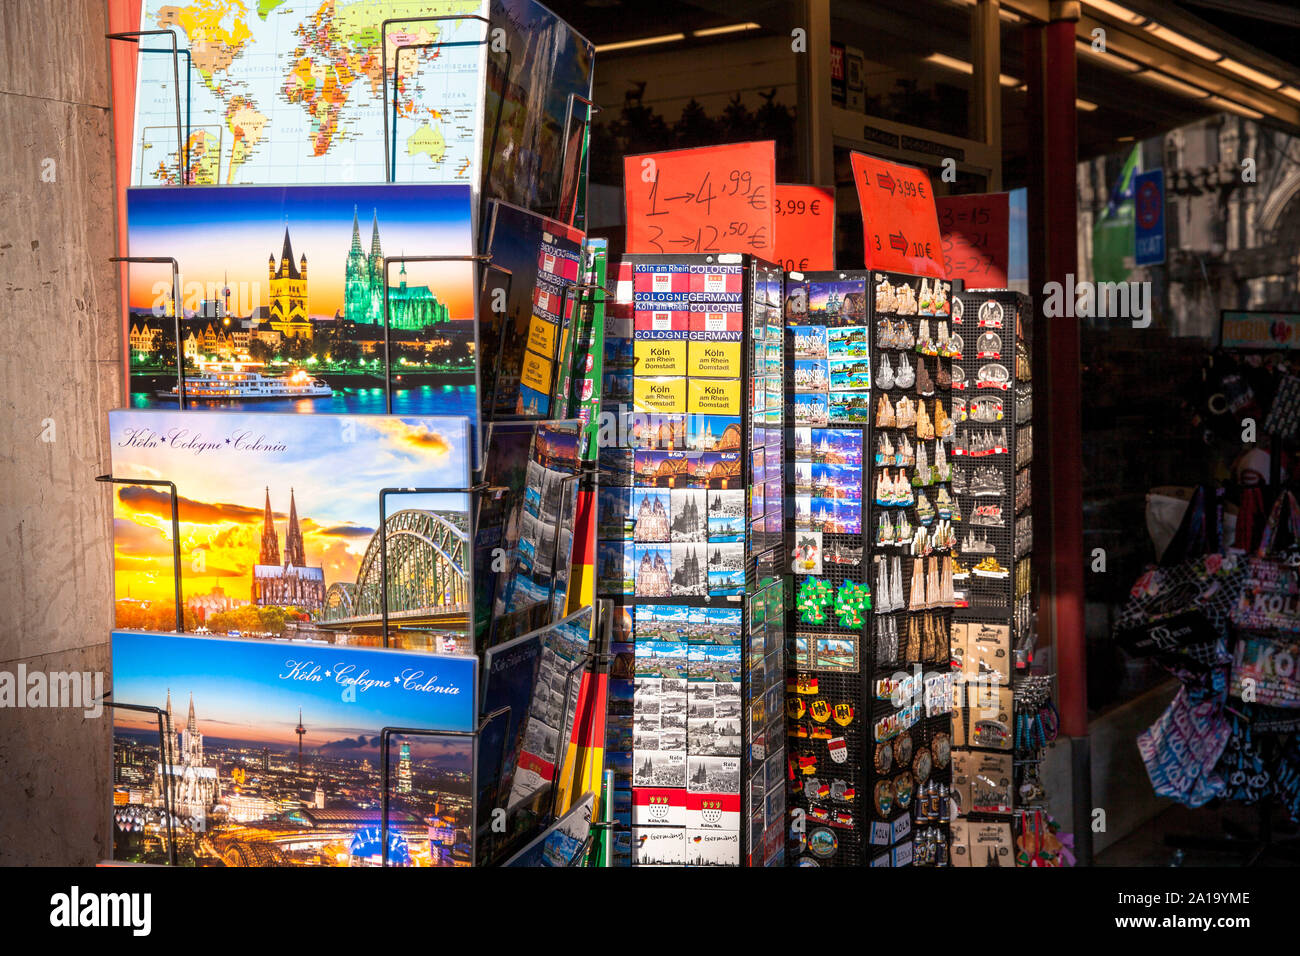 Regale mit Postkarten, Aufkleber und Poster vor einem Kiosk in der Nähe der Kathedrale, Köln, Deutschland. Staender mit Postkarten, Aufkleber und Poster vor Stockfoto